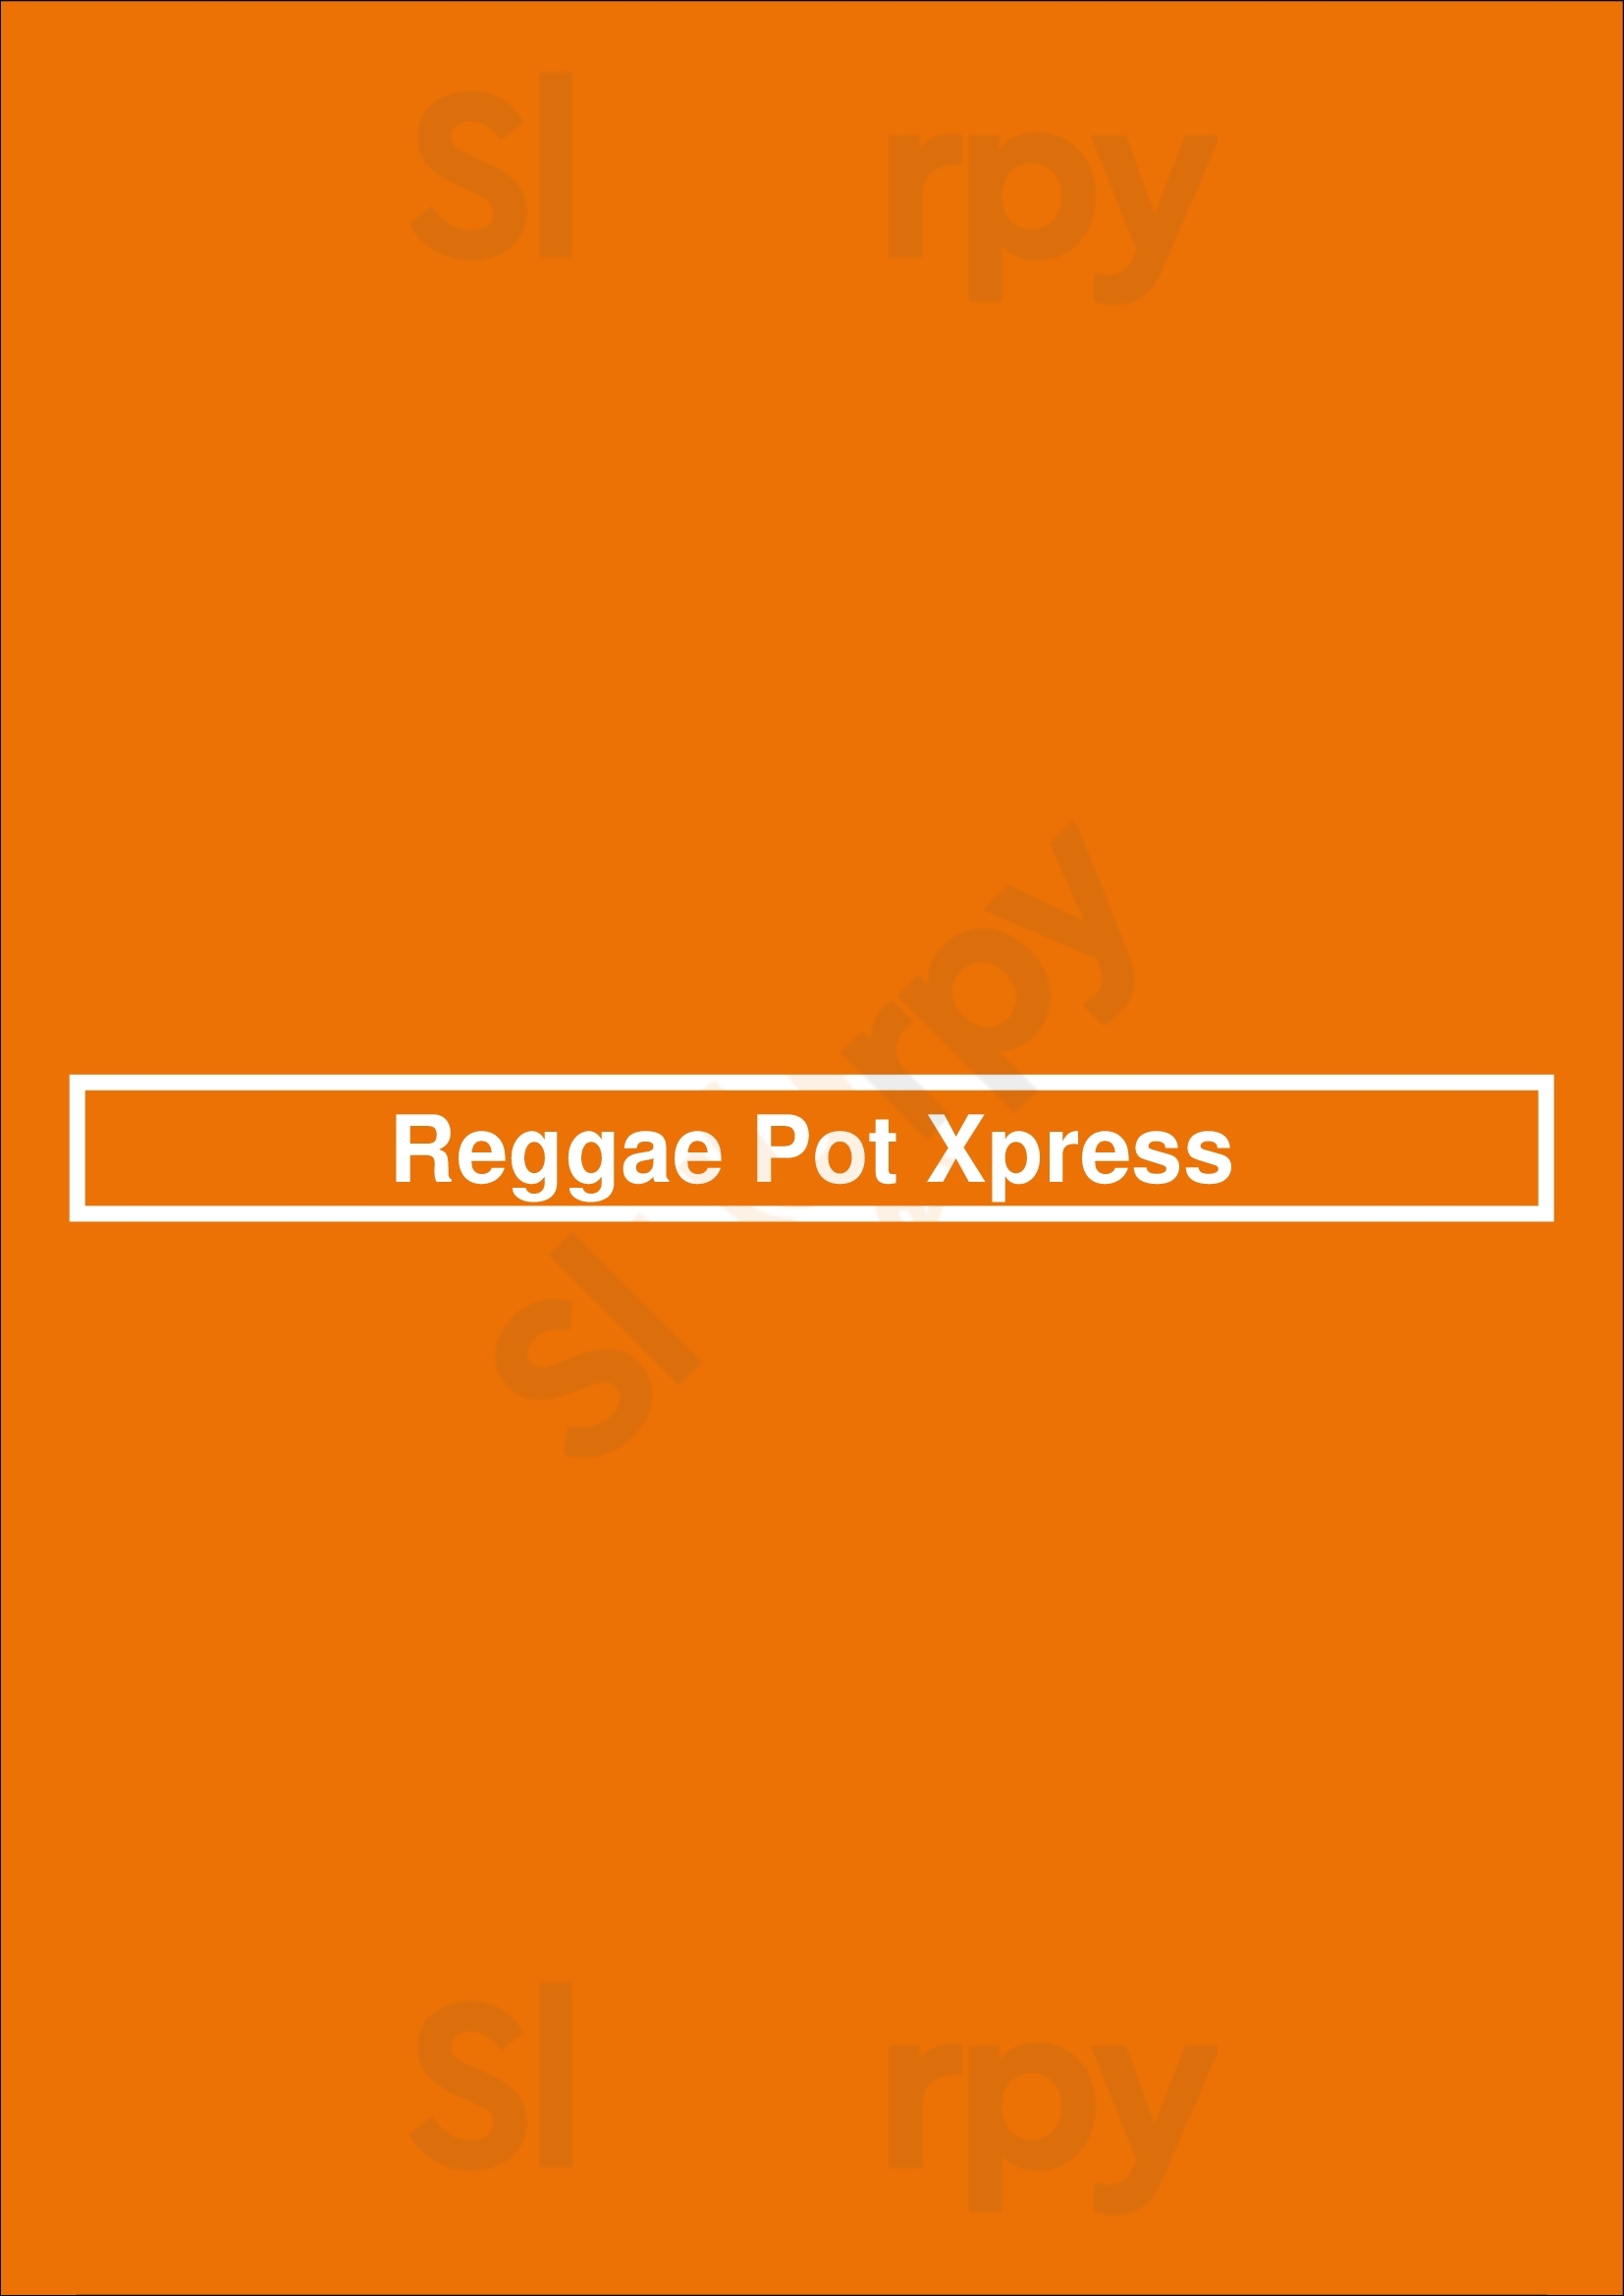 Reggae Pot Xpress Colorado Springs Menu - 1